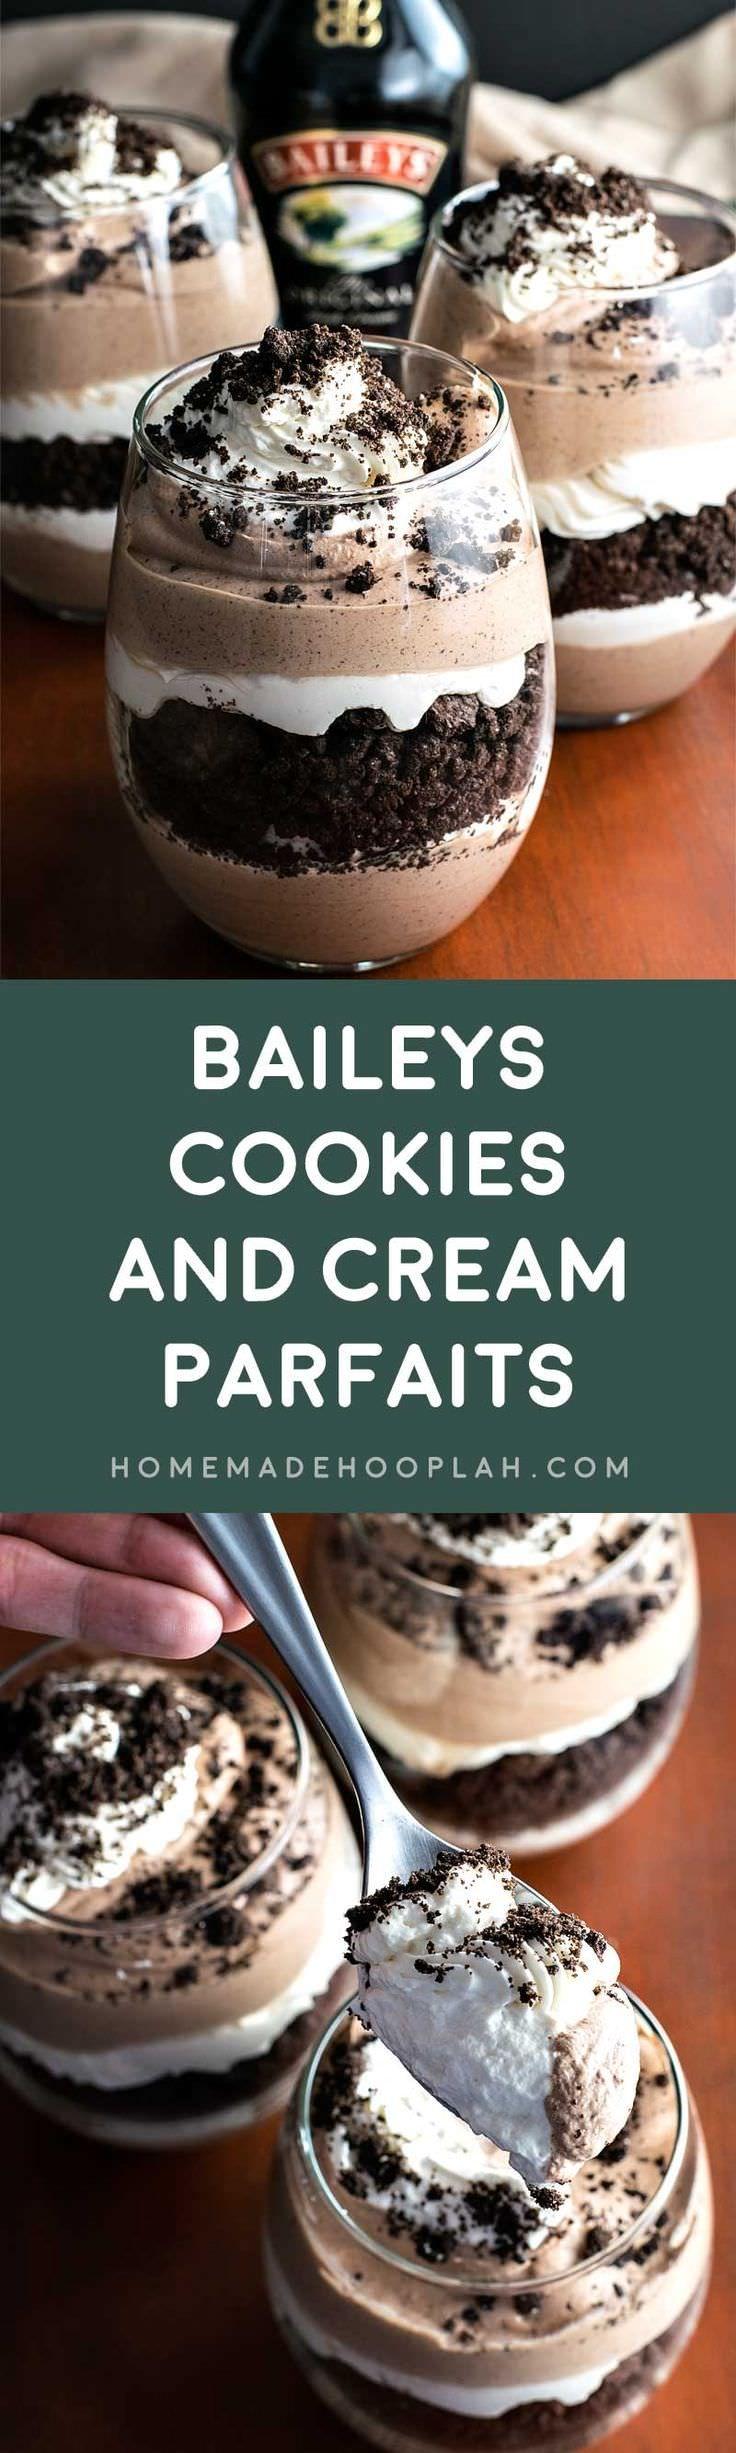 زفاف - Baileys Cookies And Cream Parfaits